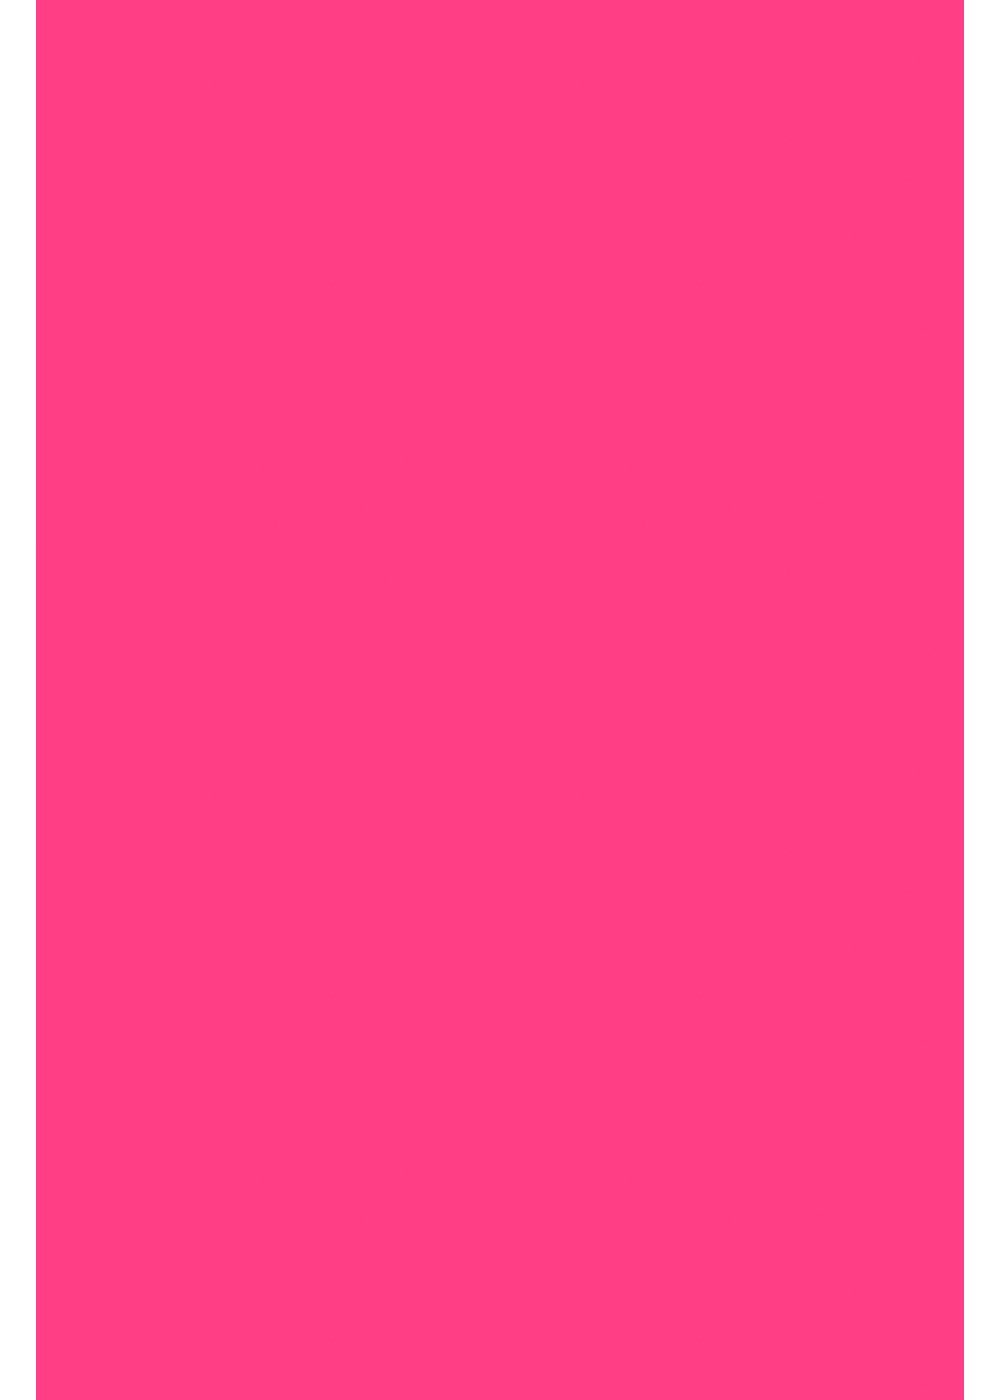 Hilltop Transparentpapier A4 Transferfolie/Textilfolie zum Aufbügeln - perfekt zum Plottern Neon Rosa